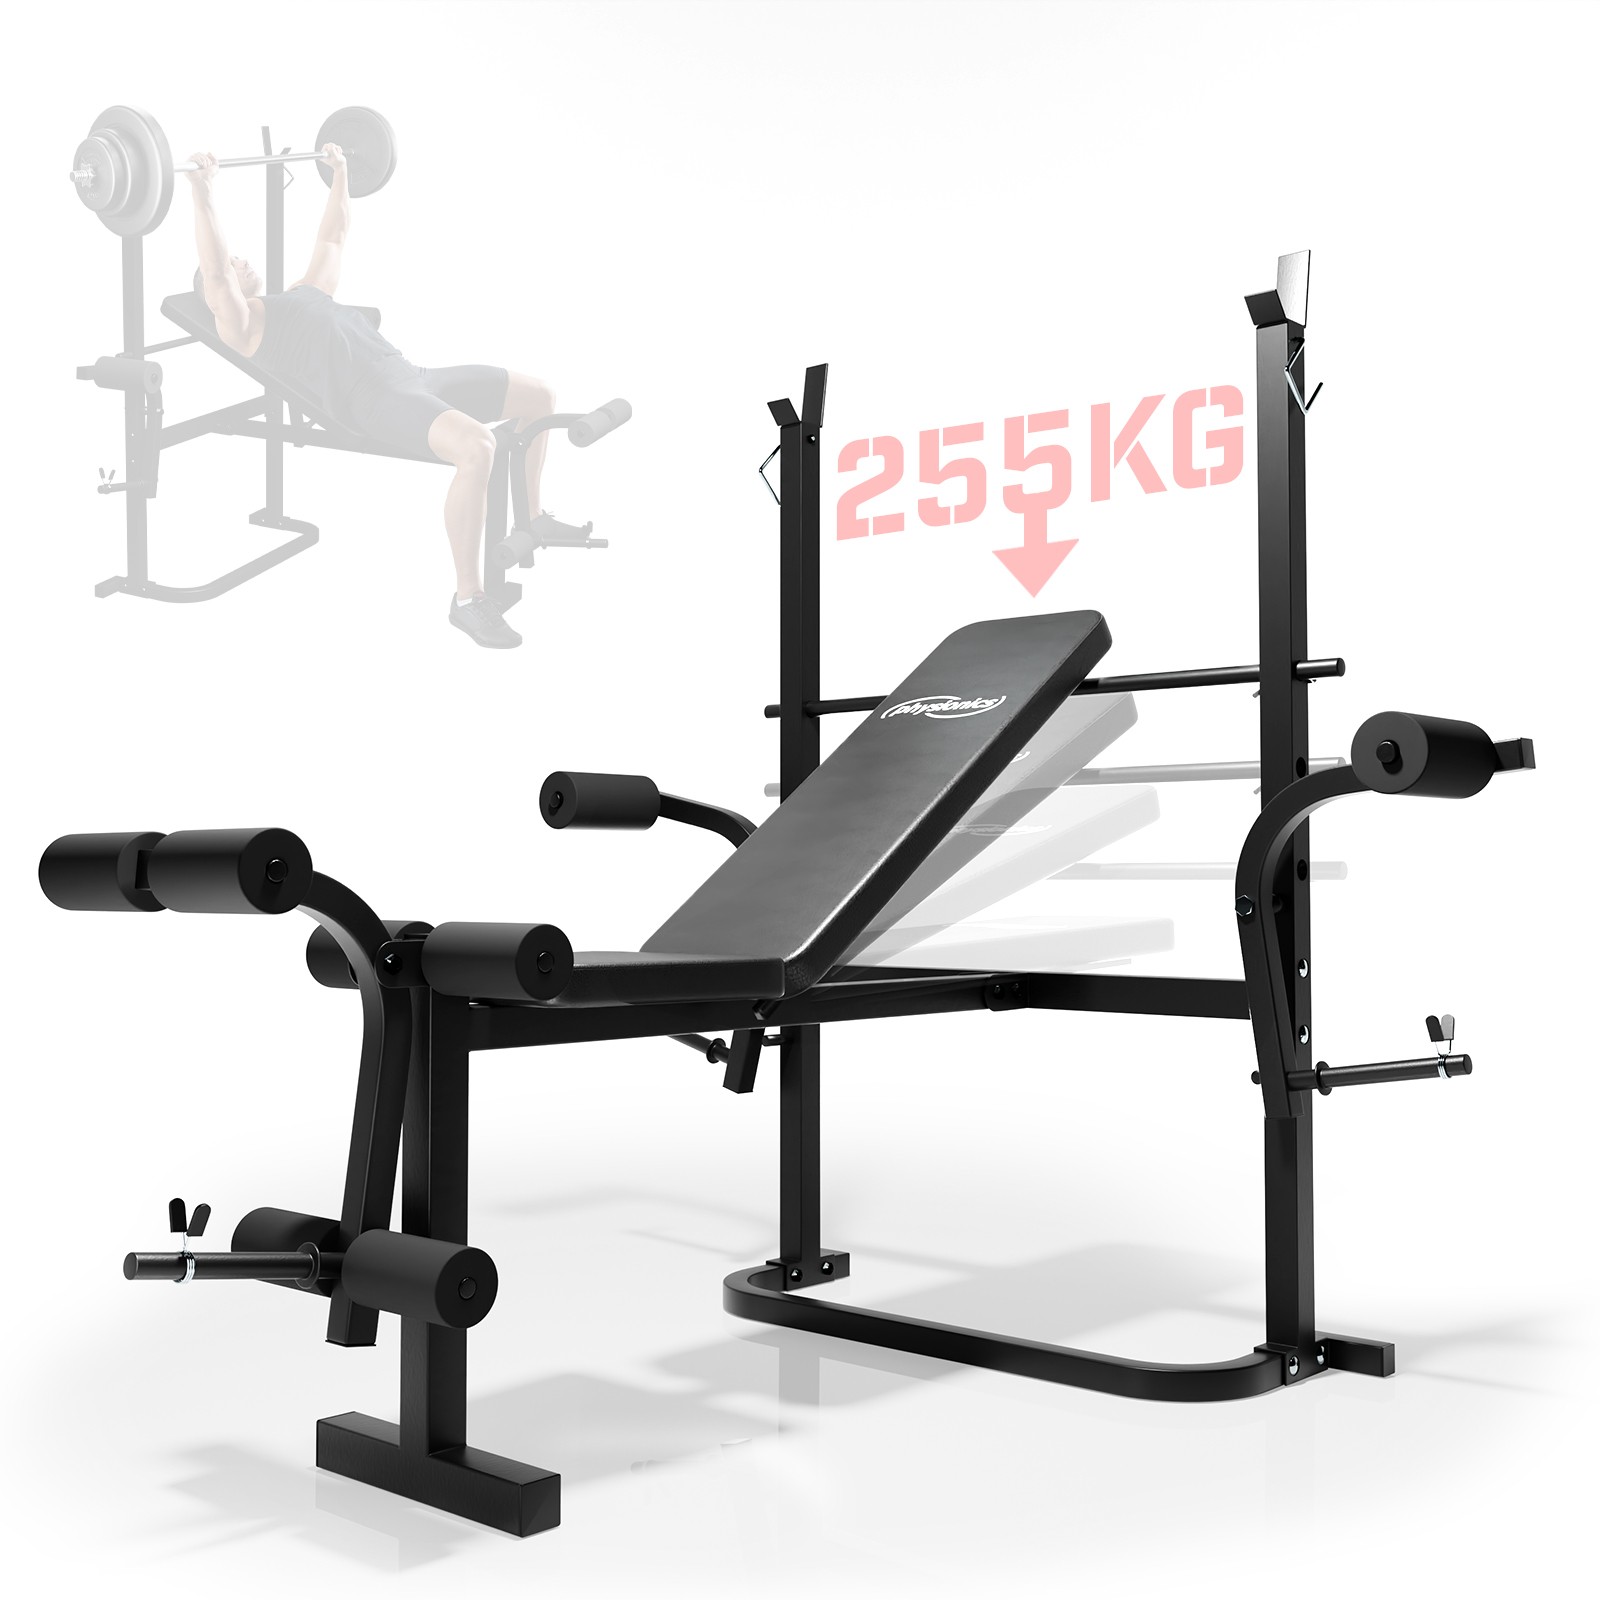 Banc de musculation Capacité de charge jusqu'à 100 kg Réglable Banc  musculation Banc d'entraînement Banc de sport fitness sport musculation